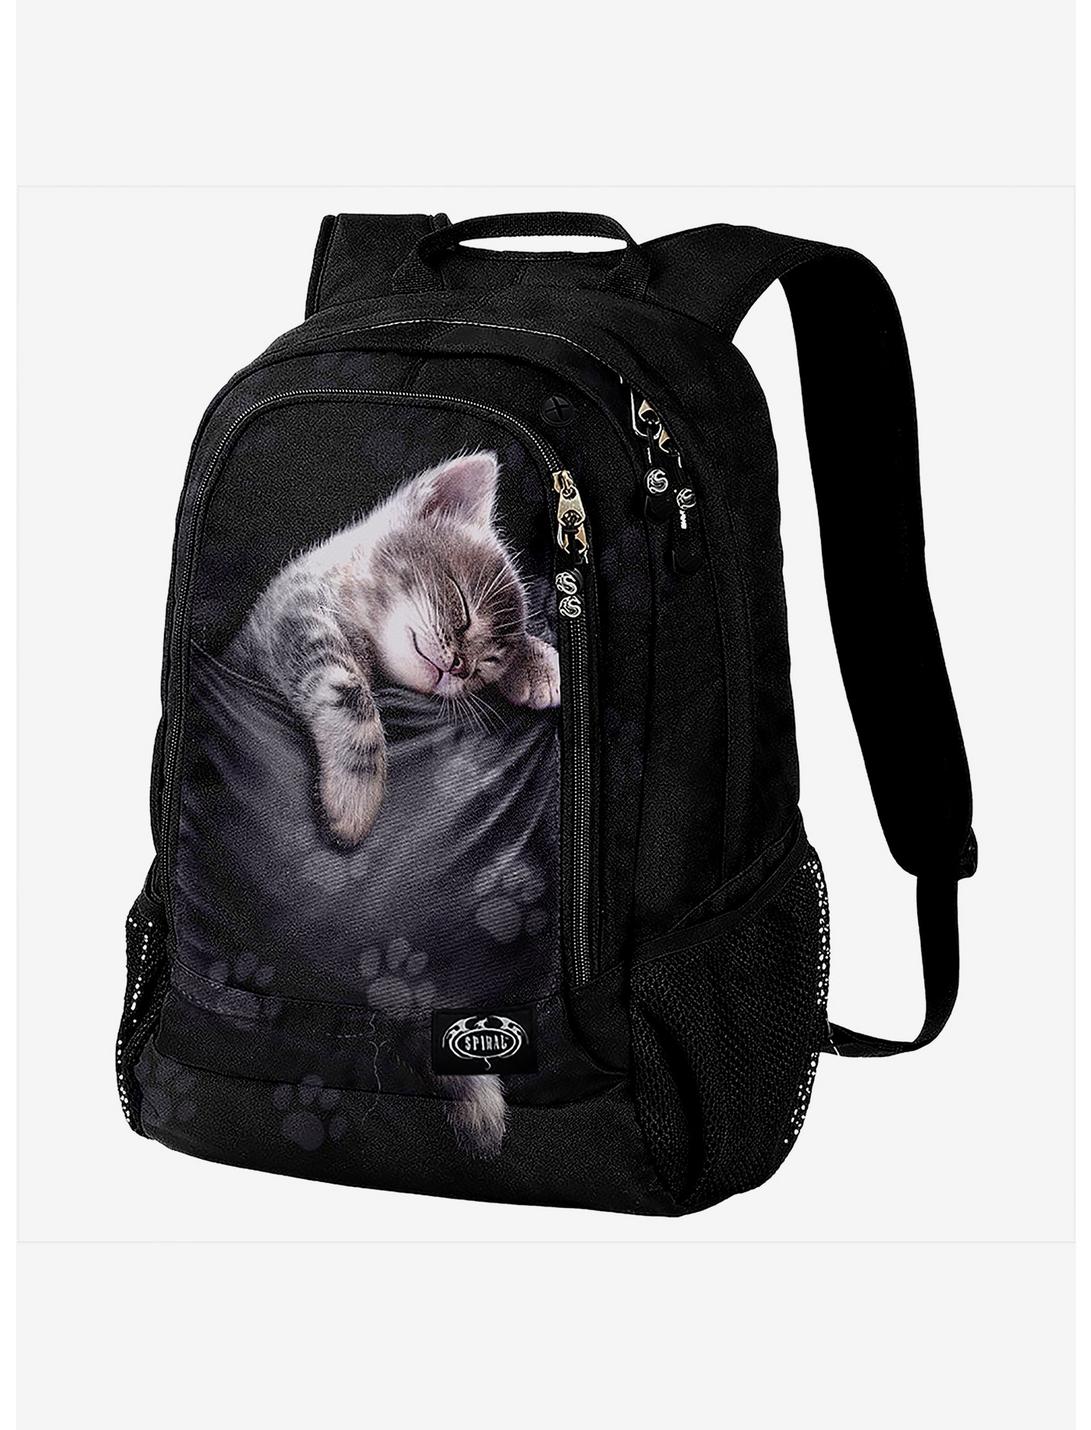 Pocket Kitten Laptop Backpack, , hi-res